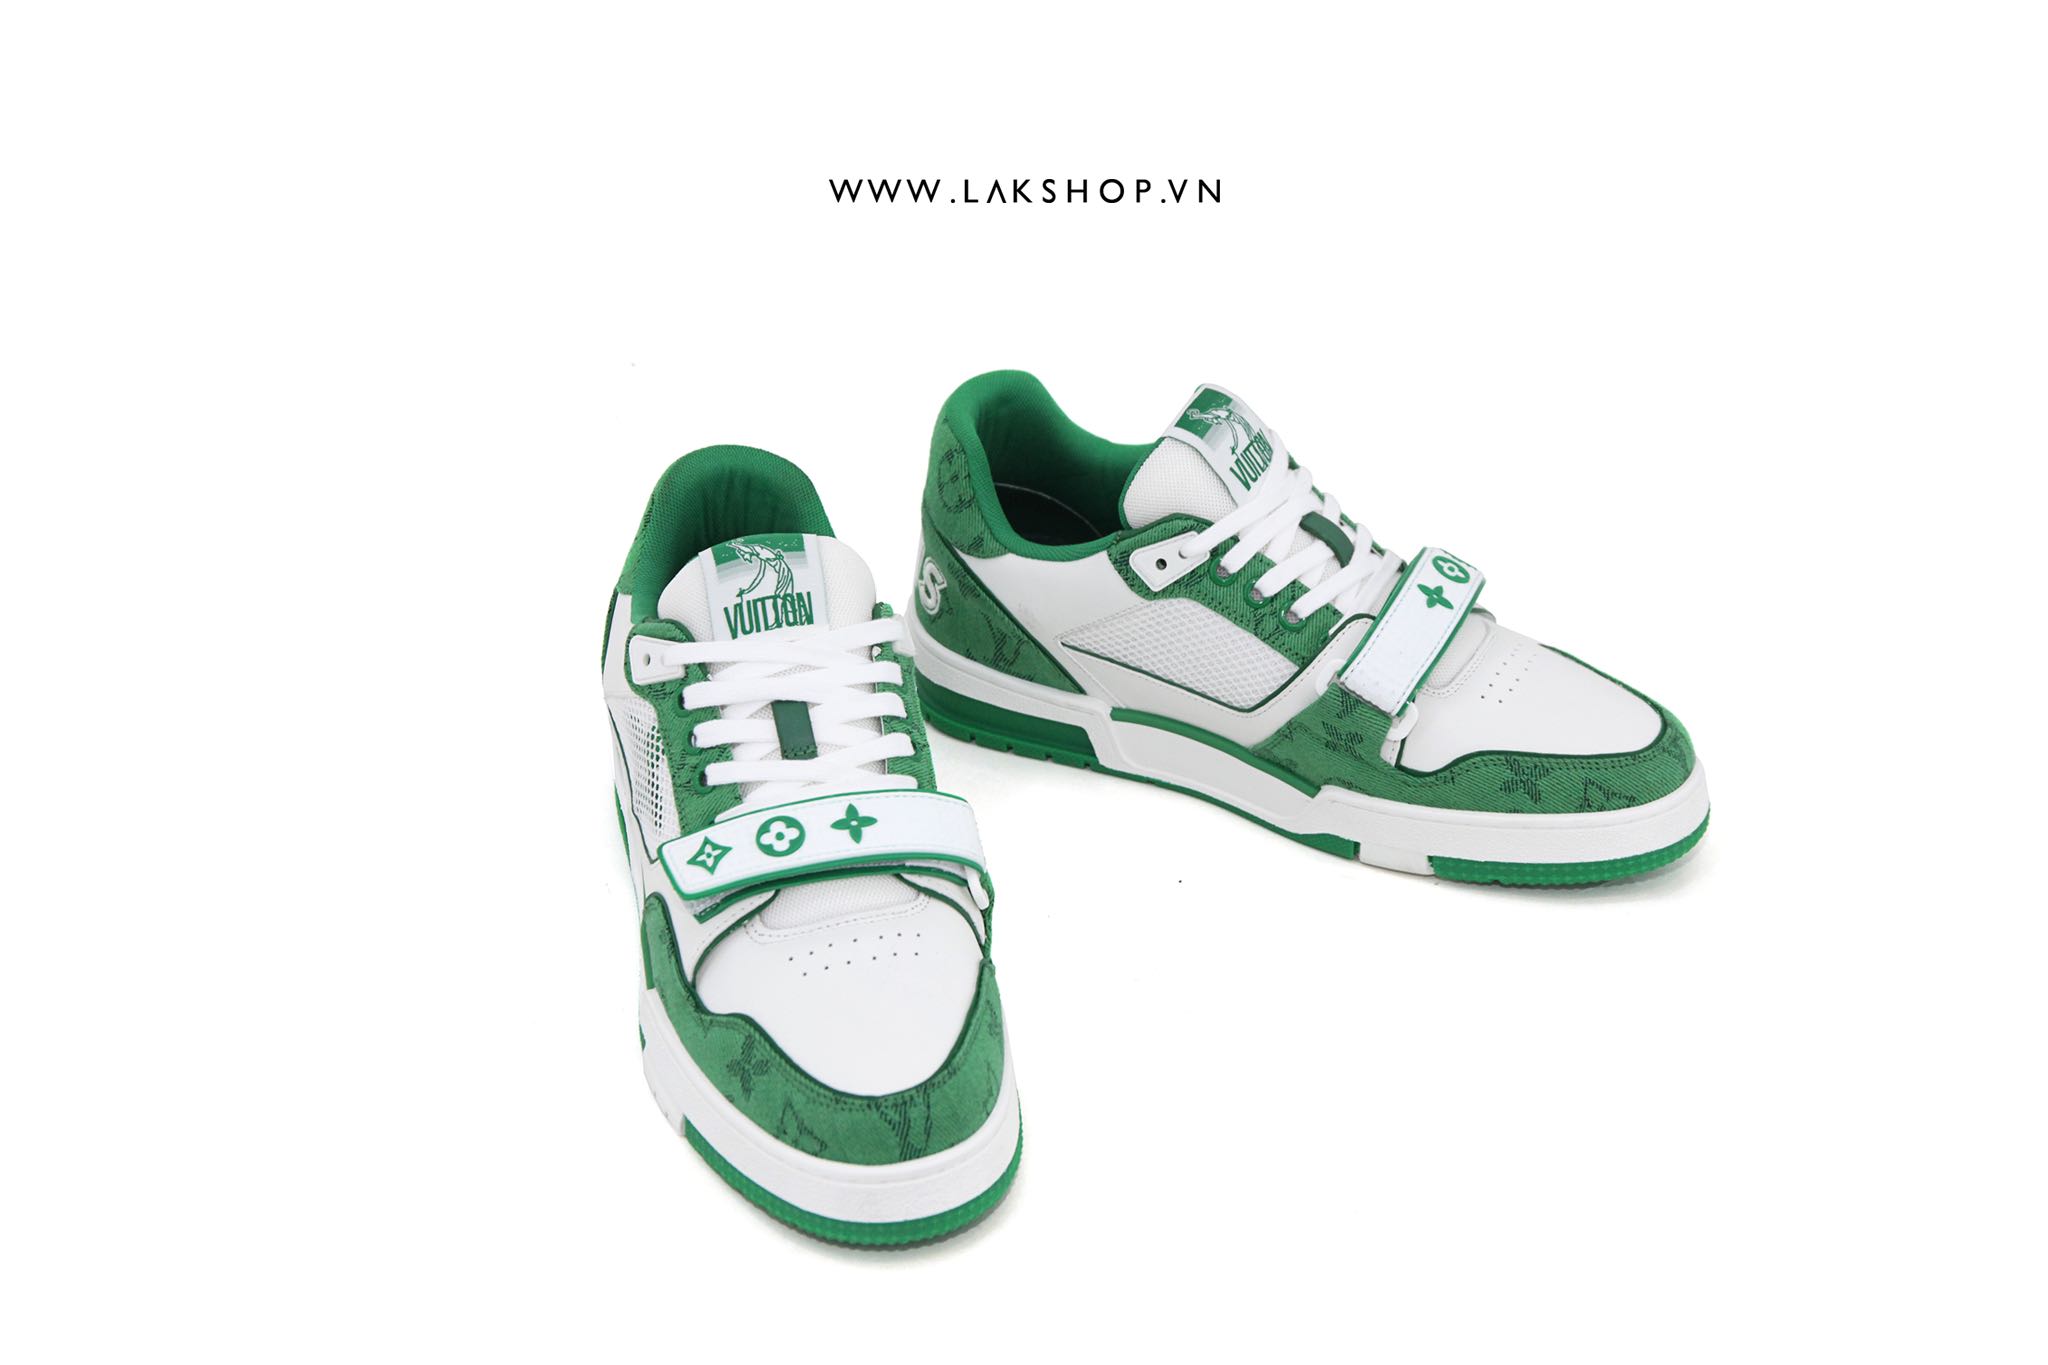 Louis Vuitton Strap Trainer Green